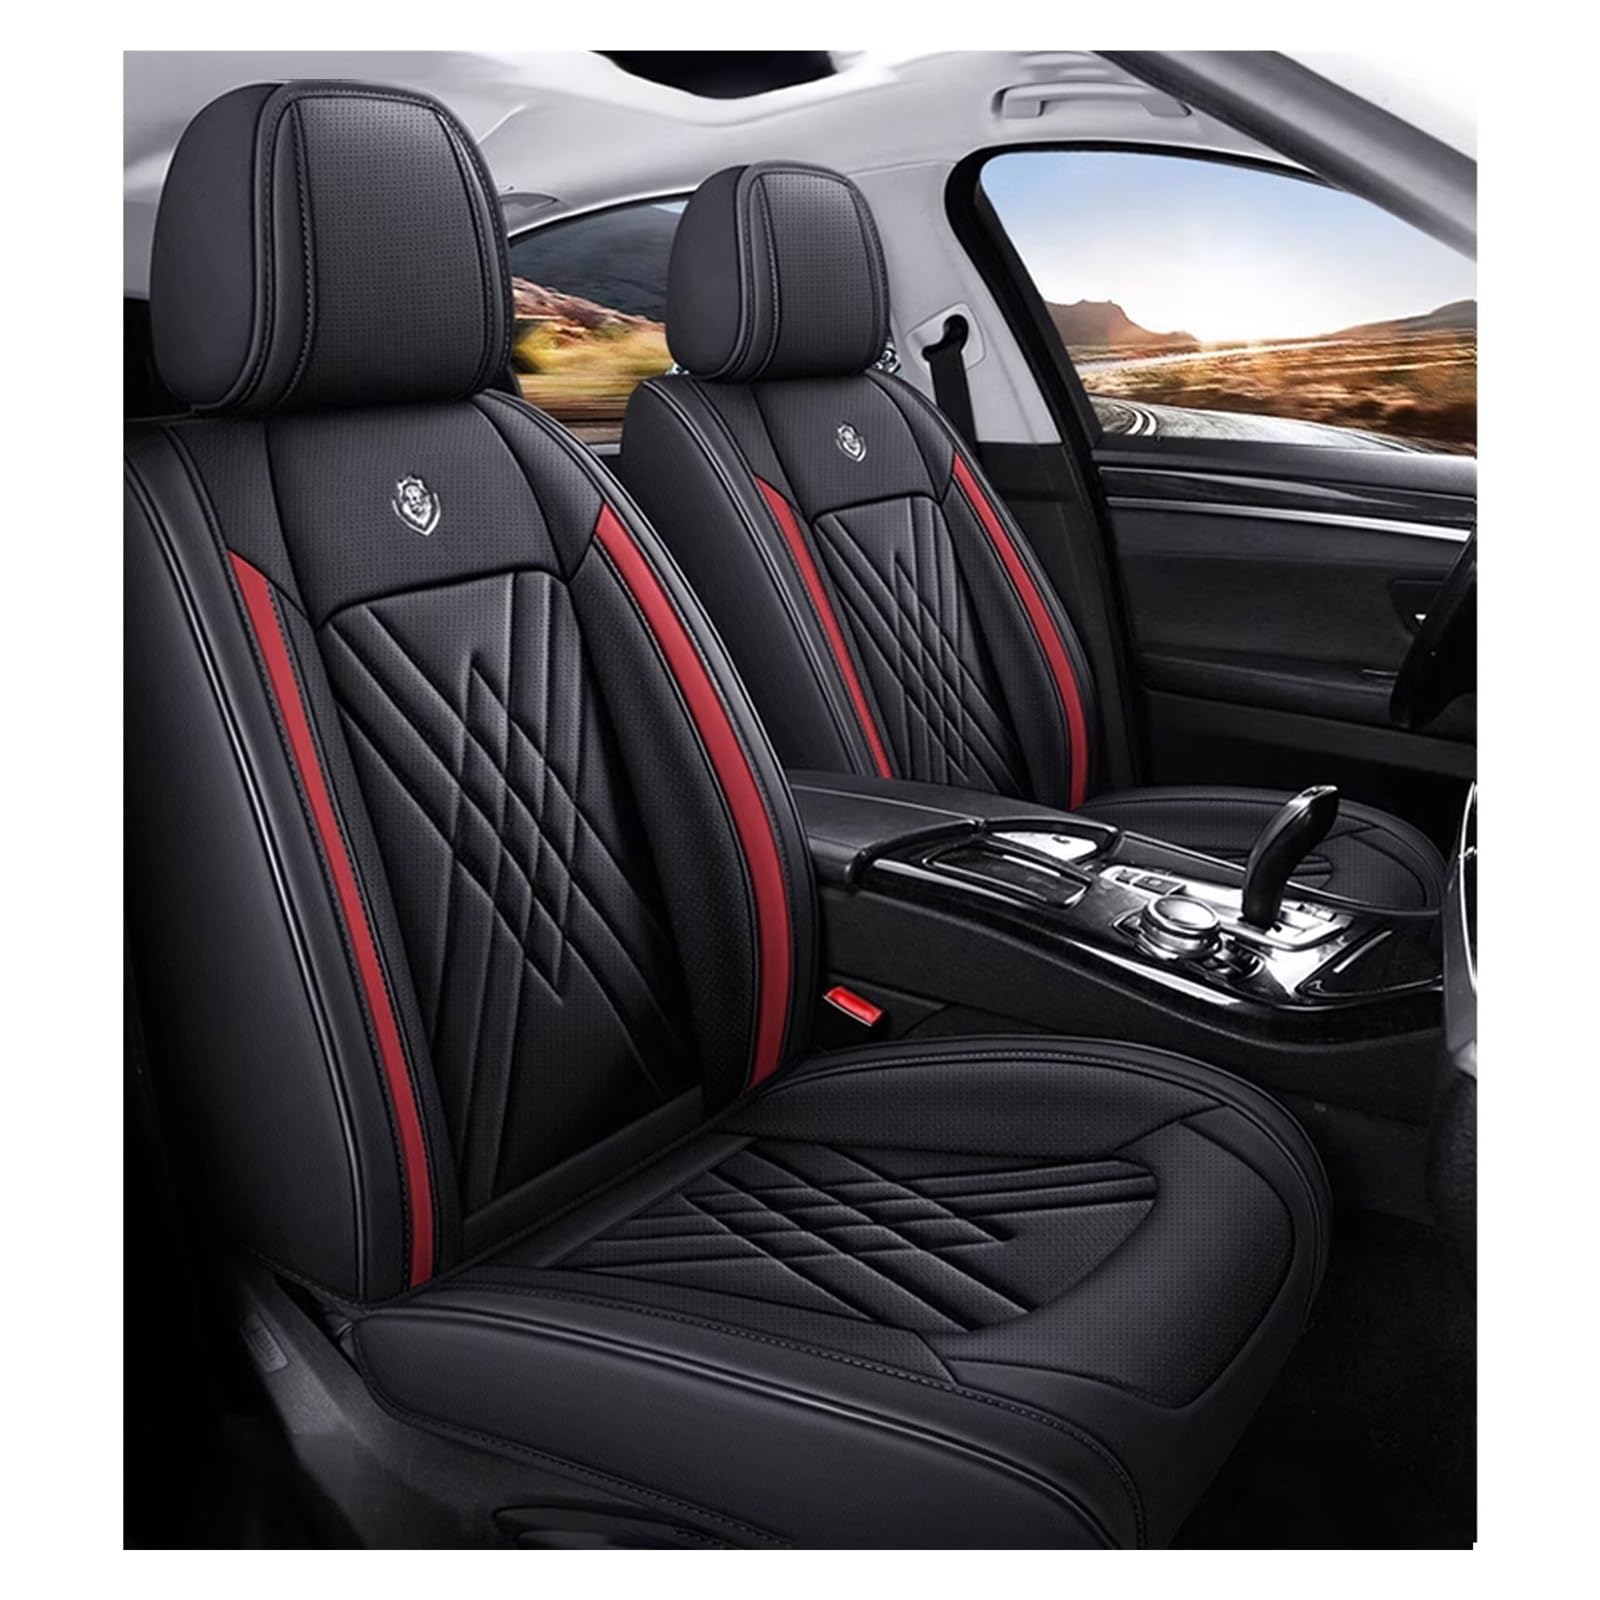 ZARUXCHA Universal-Sitzbezug Komplett-Set Für Honda Civic IX Coupe 2011 2012 2013 2014 AutositzbezüGe Set Leder, 5-Sitze Universal-SitzbezüGe Auto Komplettset(E(Dark Red)) von ZARUXCHA